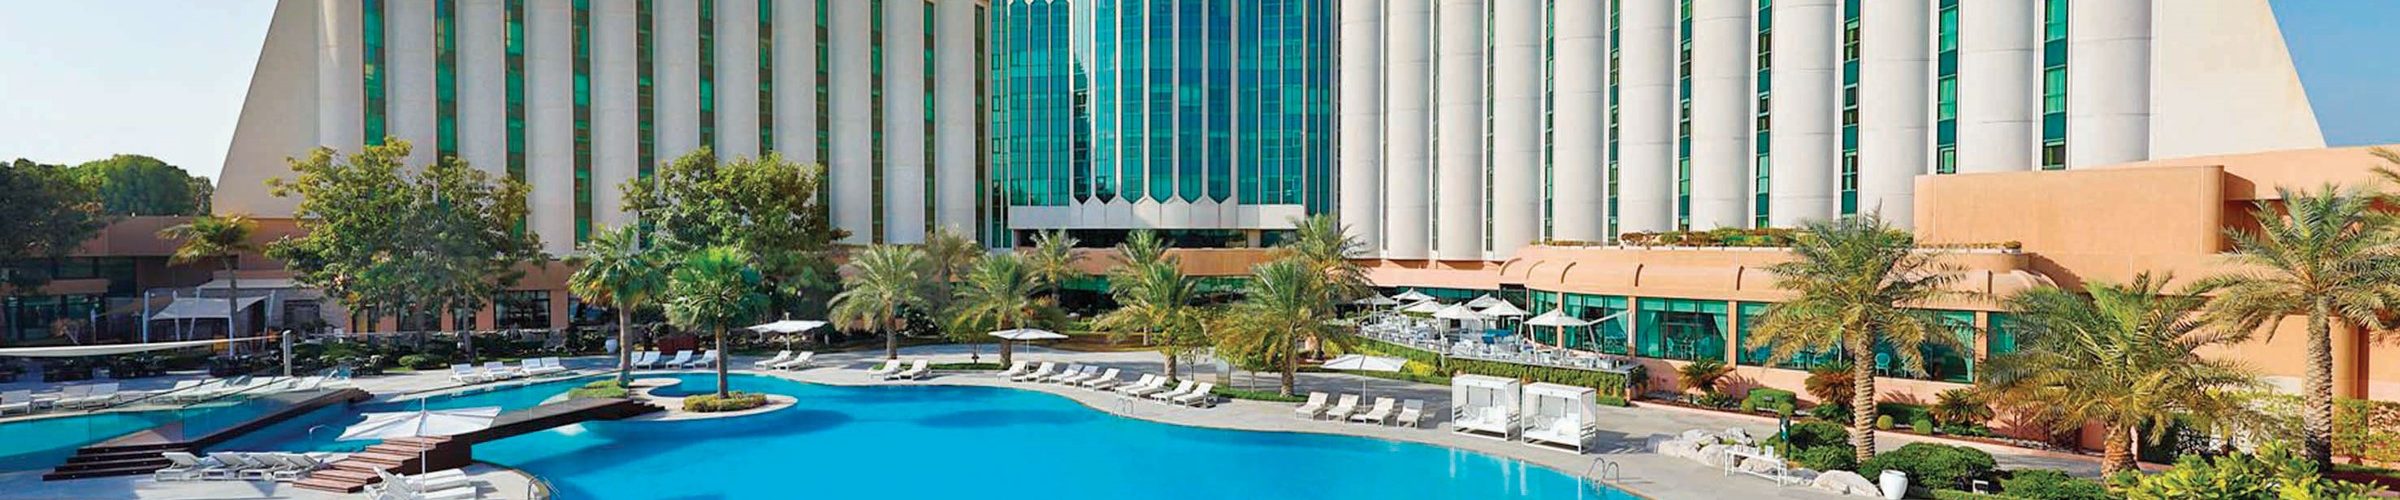 فندق الريتز كارلتون البحرين